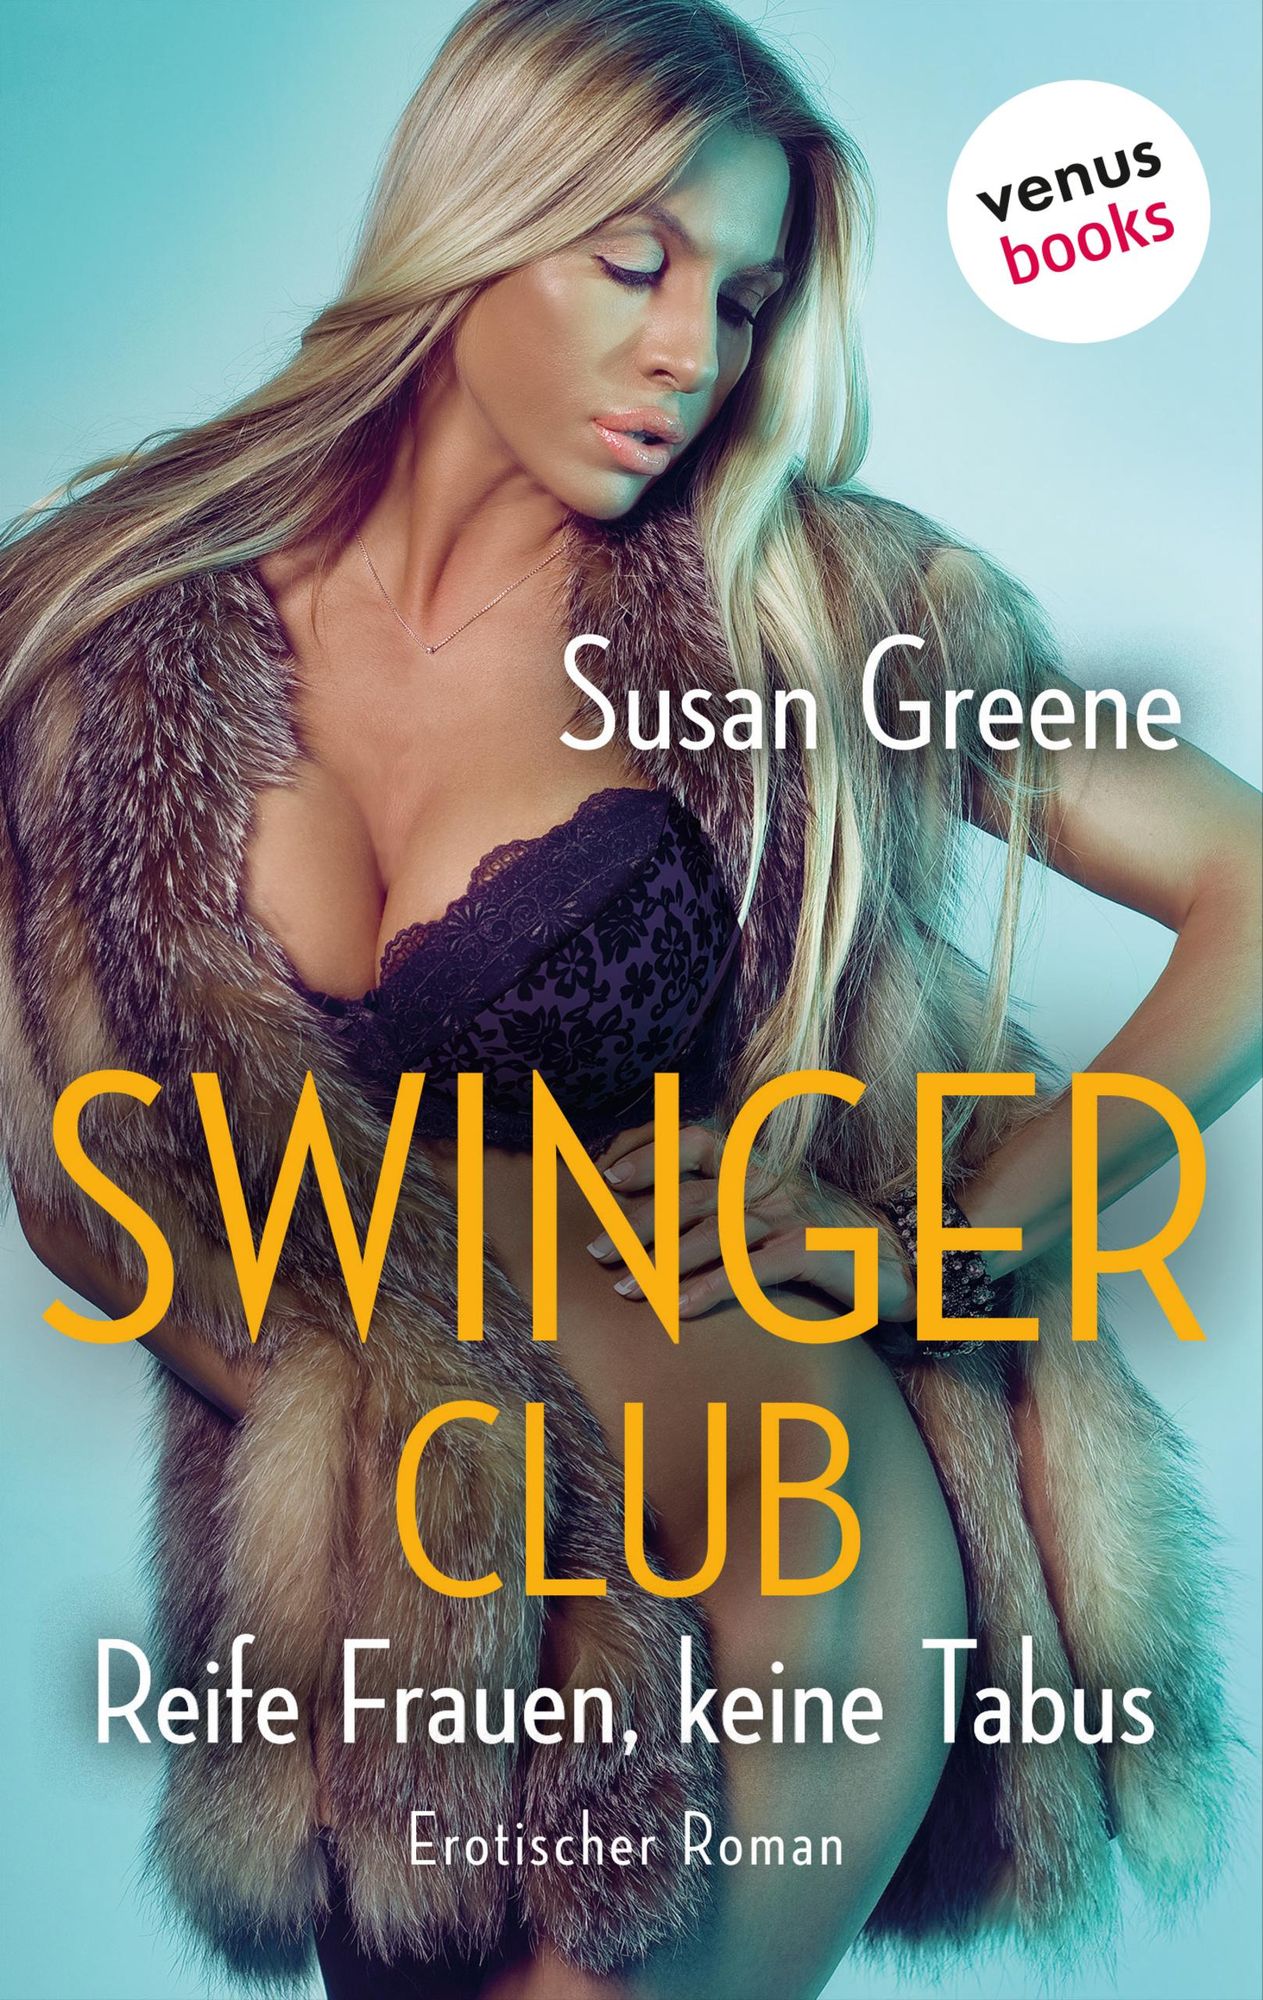 Swingerclub - Reife Frauen, keine Tabus von Susan Greene Bild Foto